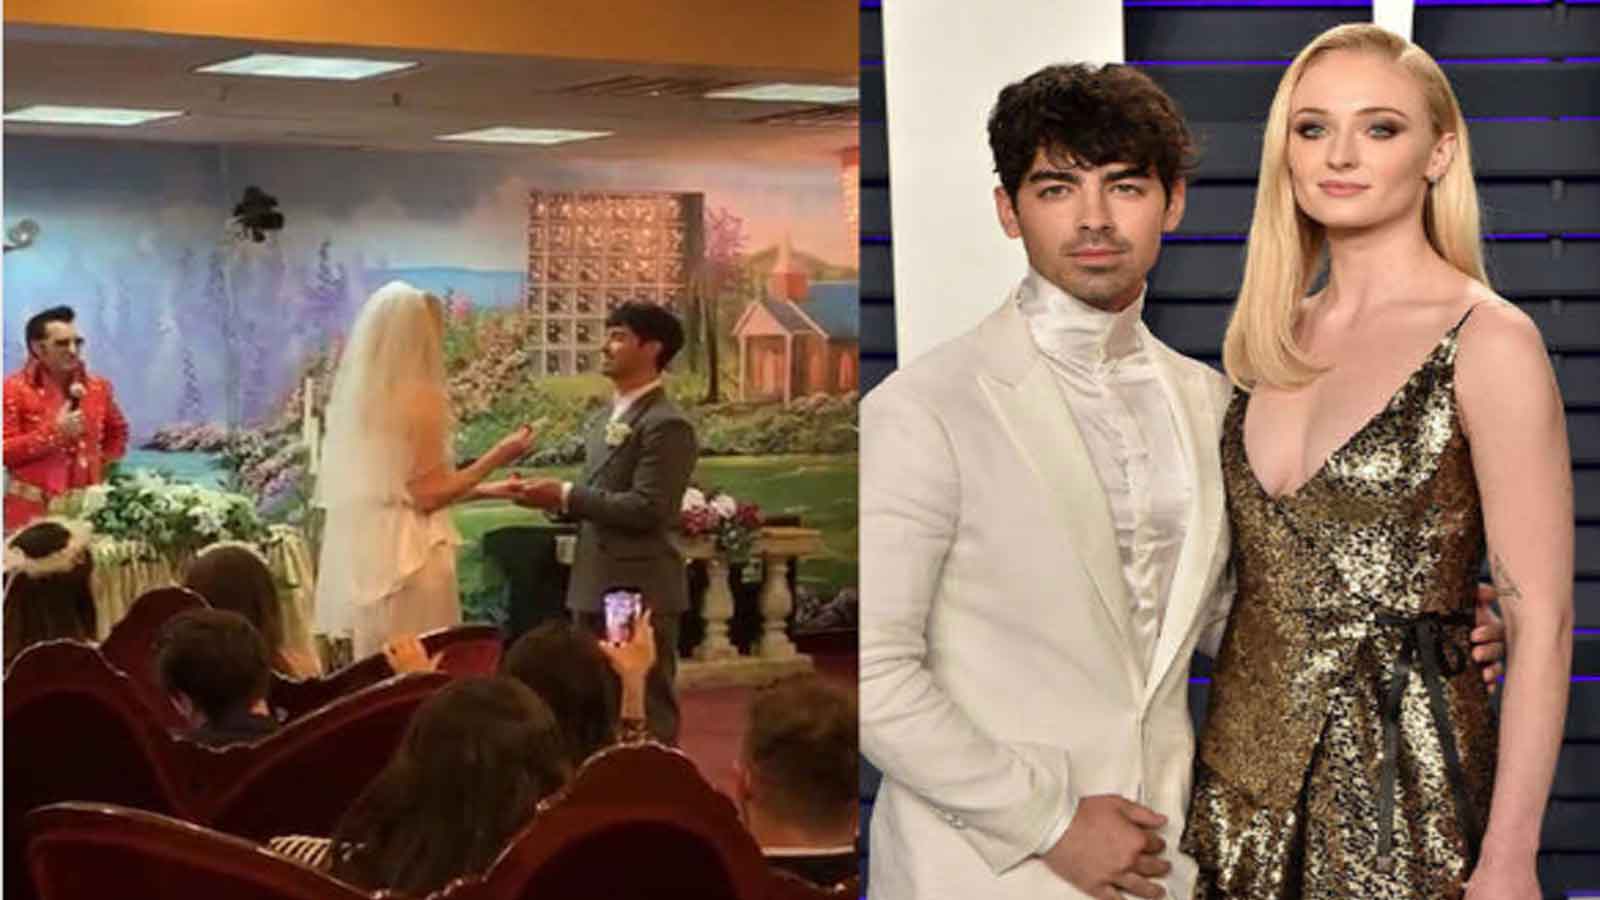 Sophie Turner-Joe Jonas Celebrate 2 Years of Las Vegas Wedding